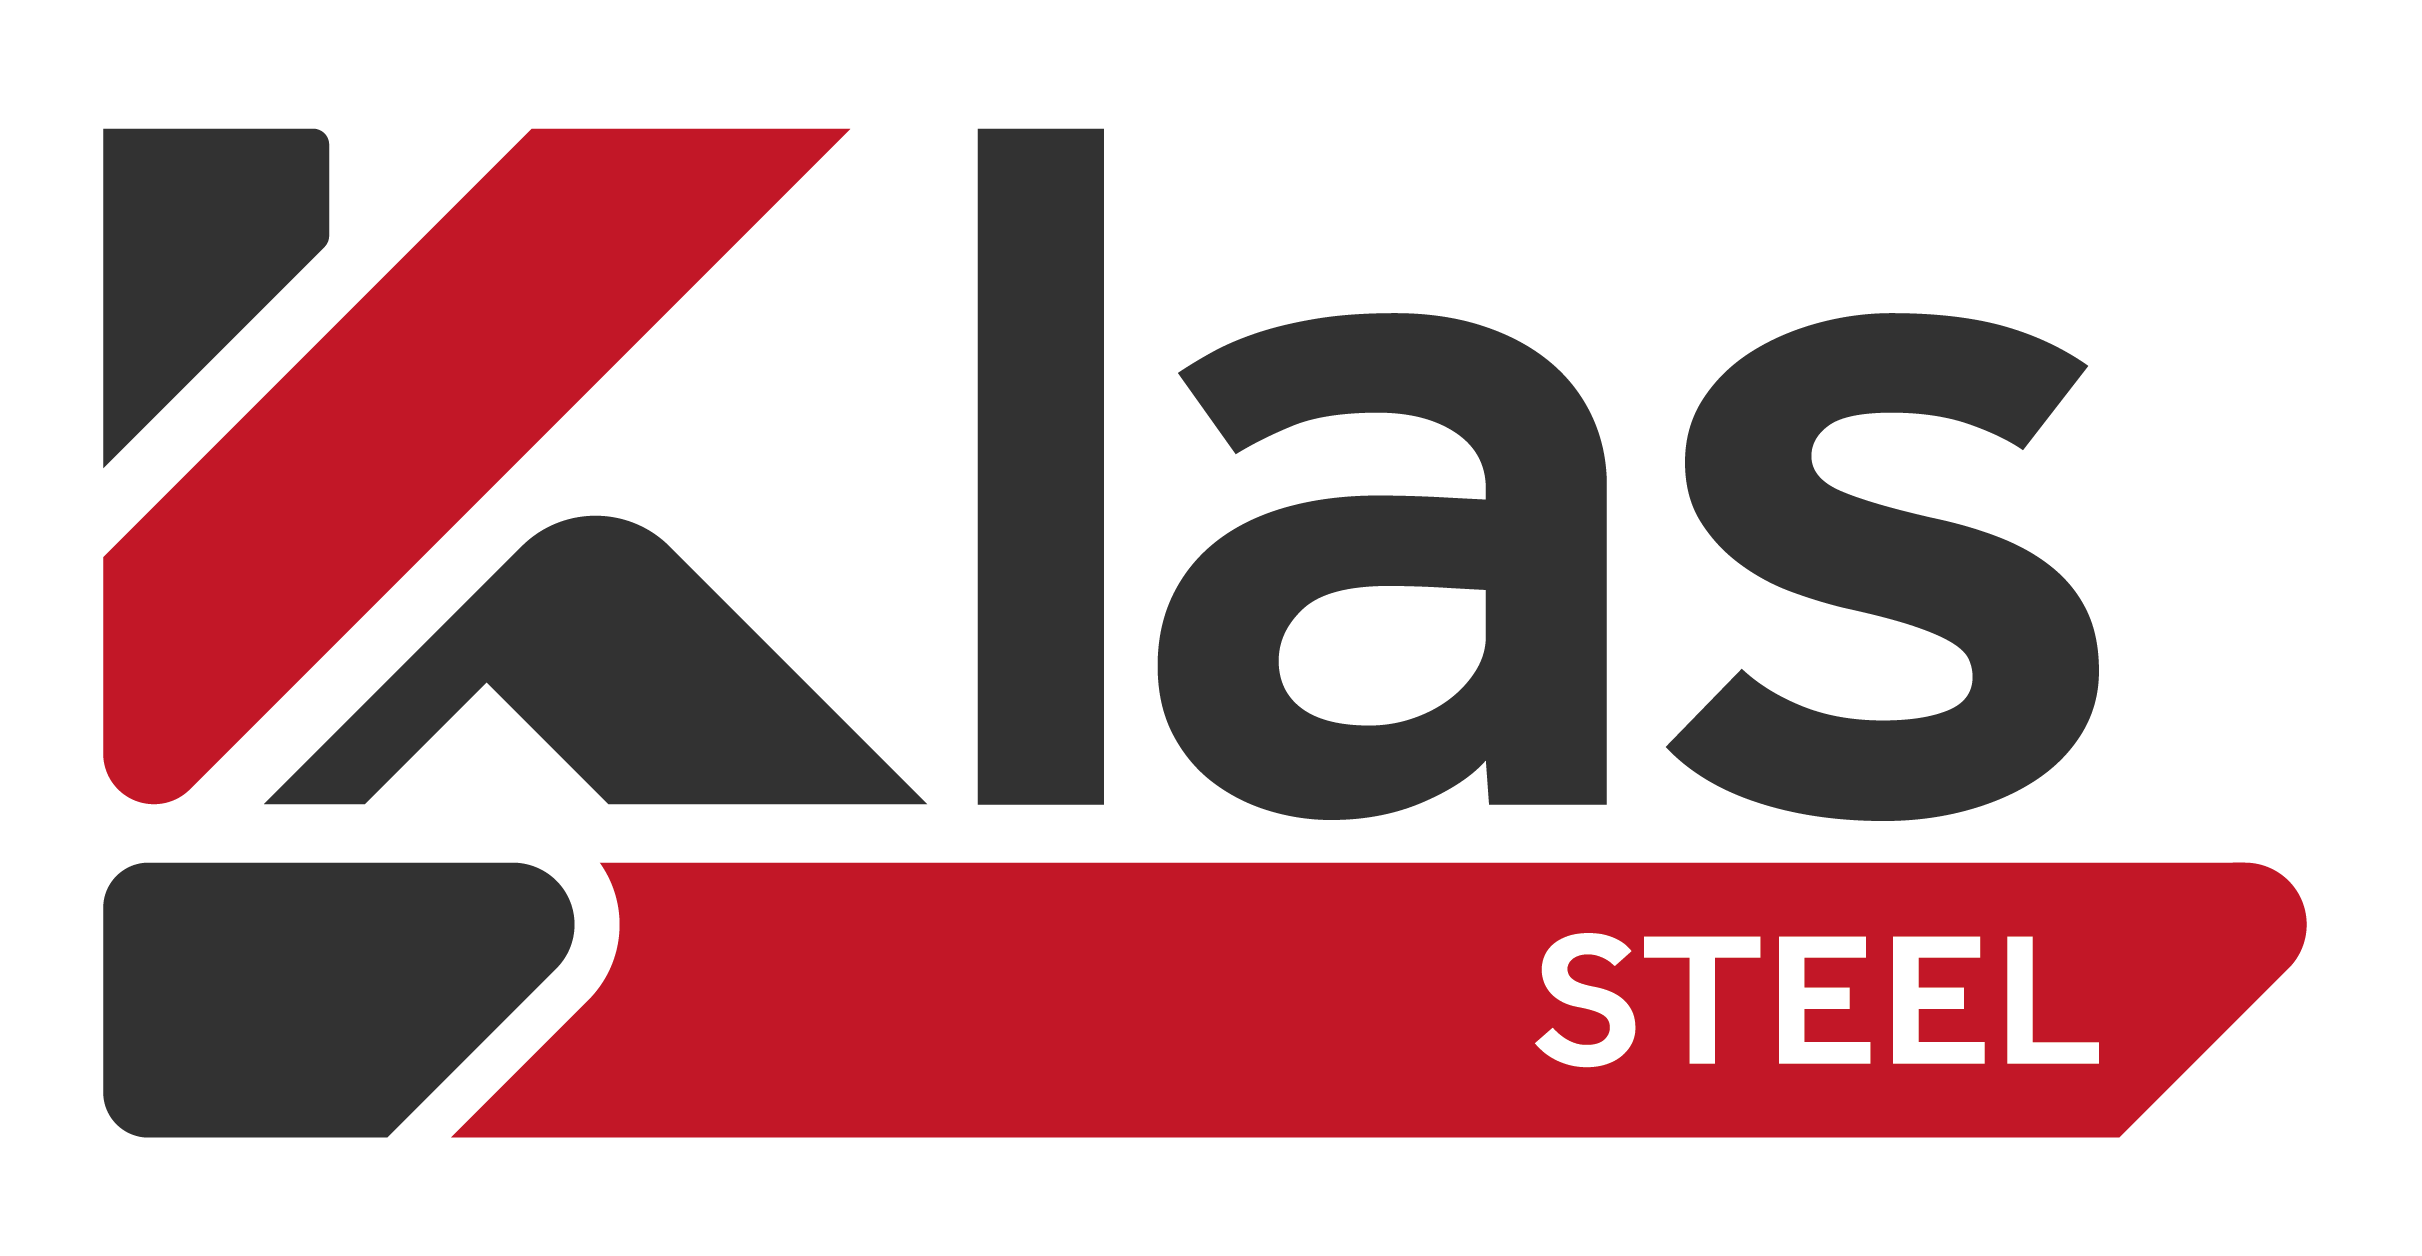 Klas Steel